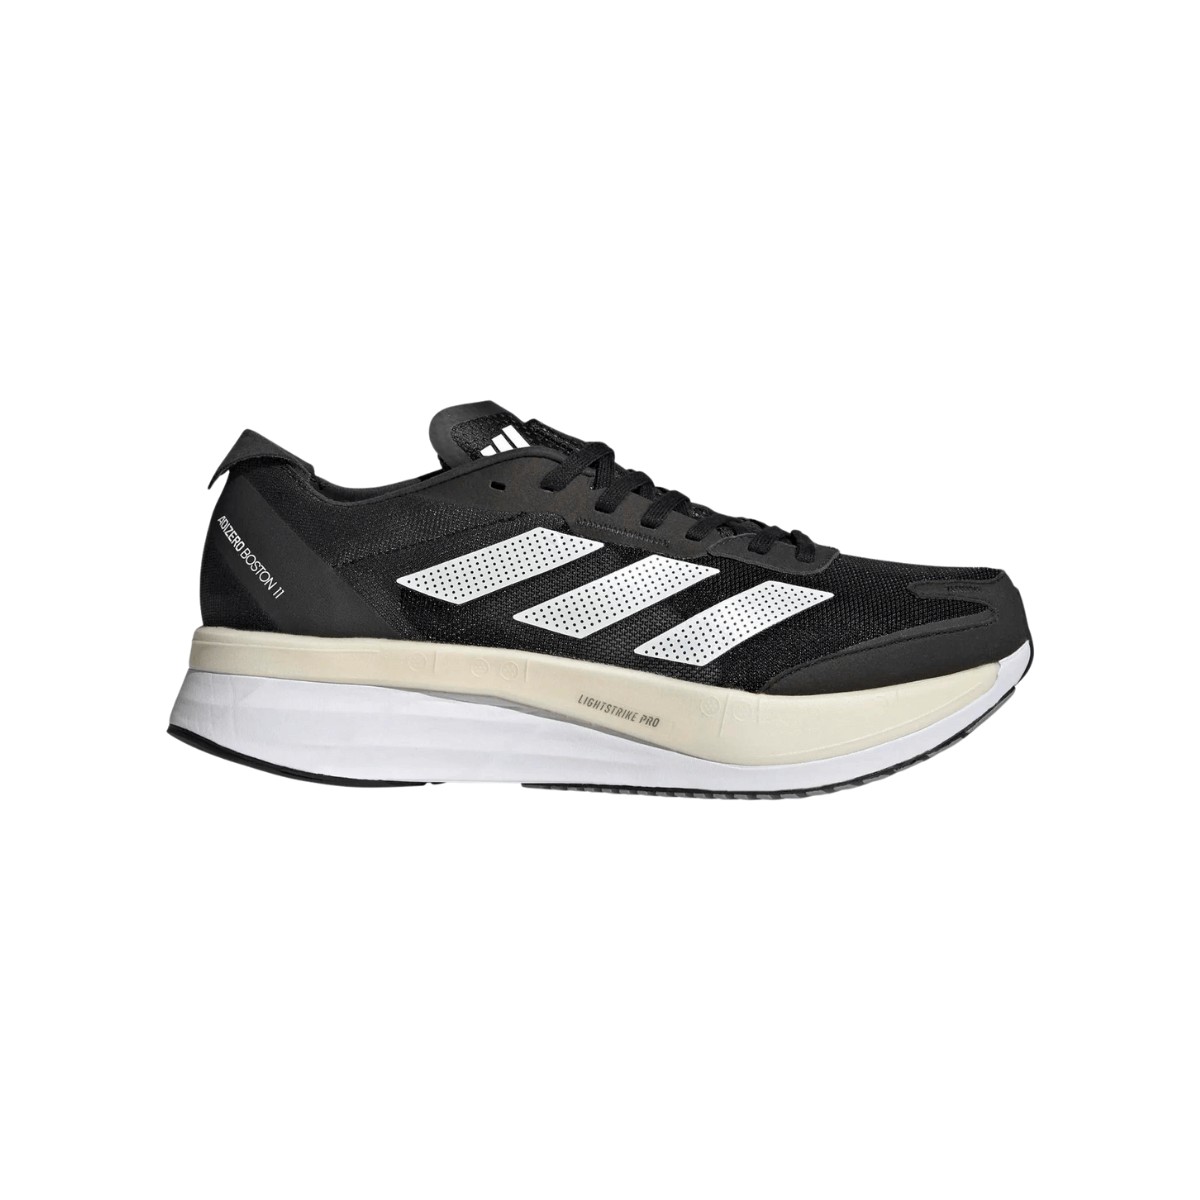 Adidas Adizero Boston 11 Shoes Black Beige AW22, Size UK 8